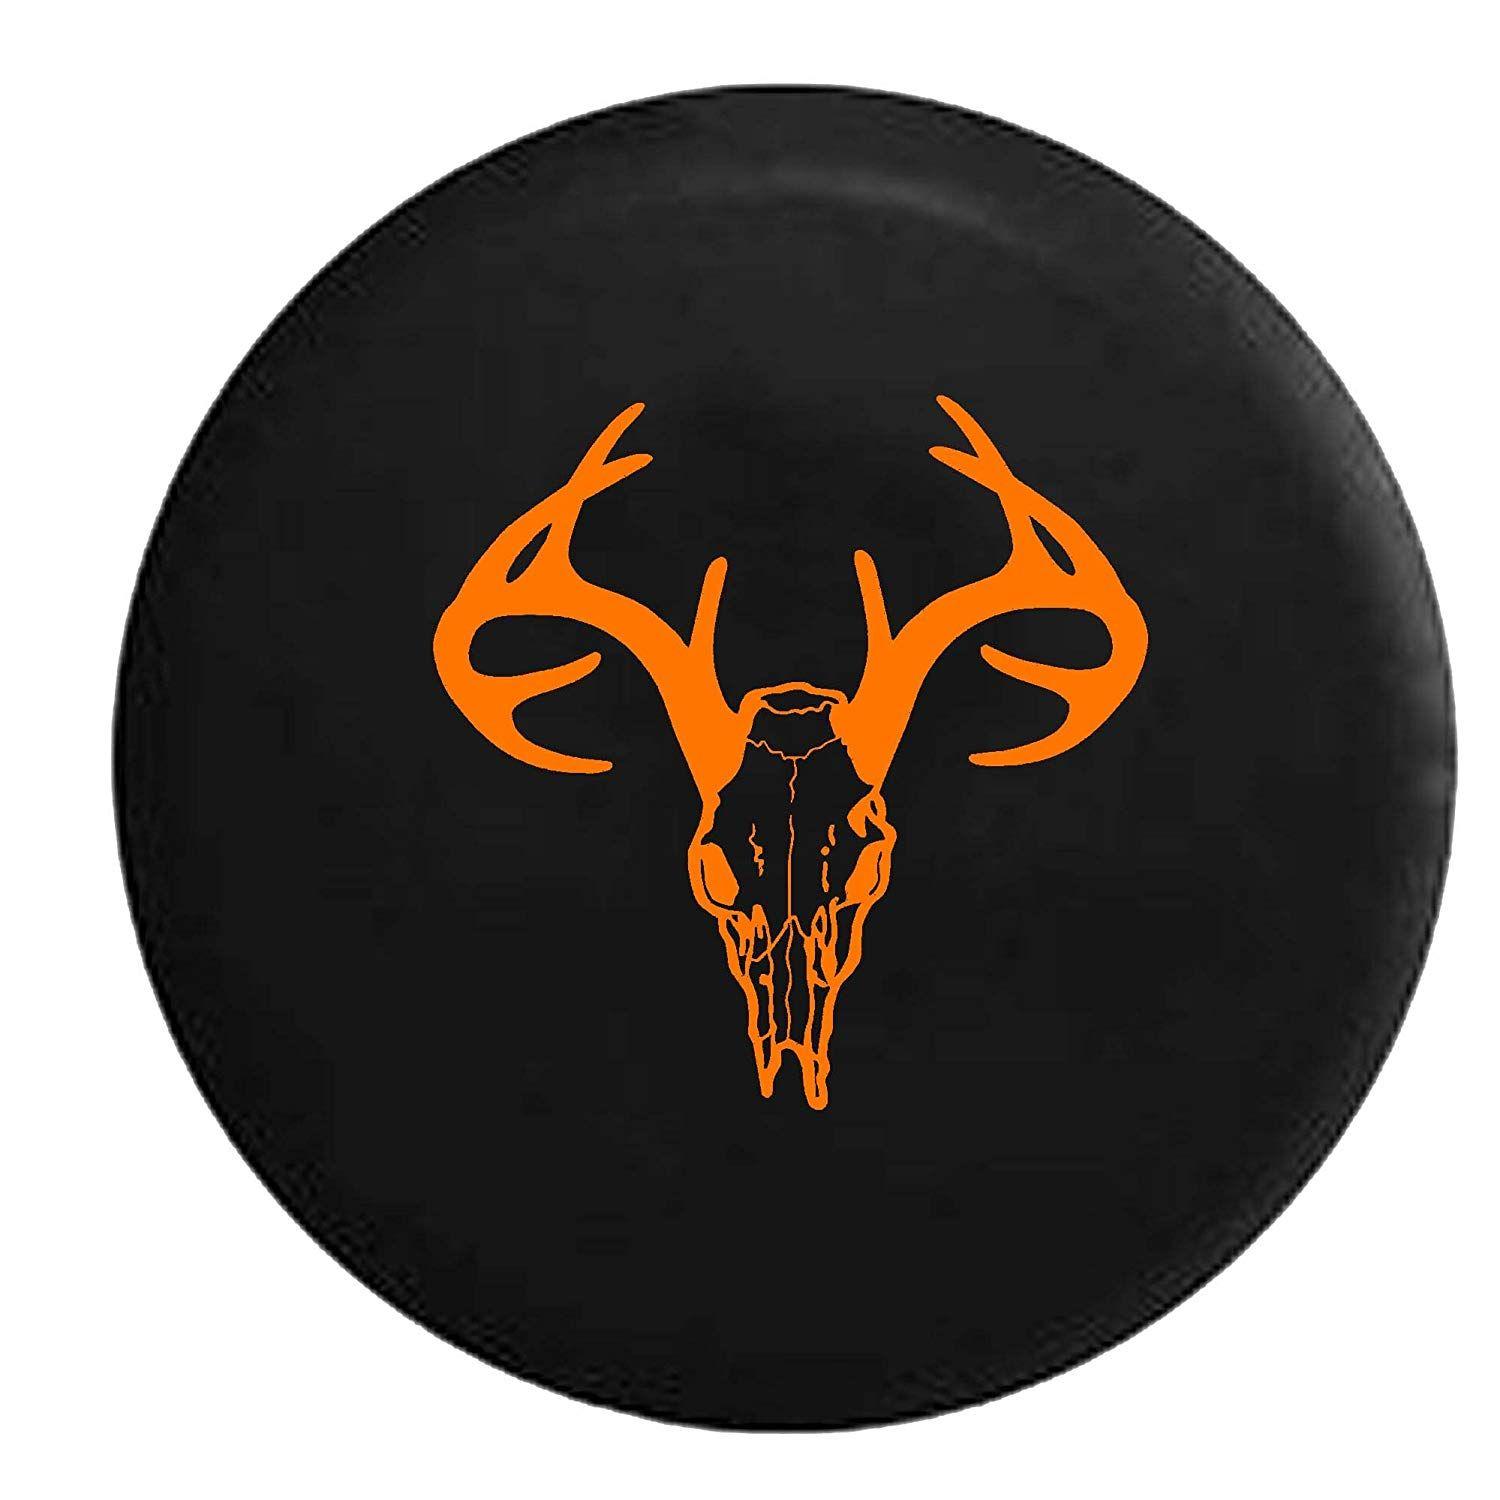 Orange Deer Logo - Amazon.com: Orange - Deer Skull Antlers Hunting Archery Bone ...